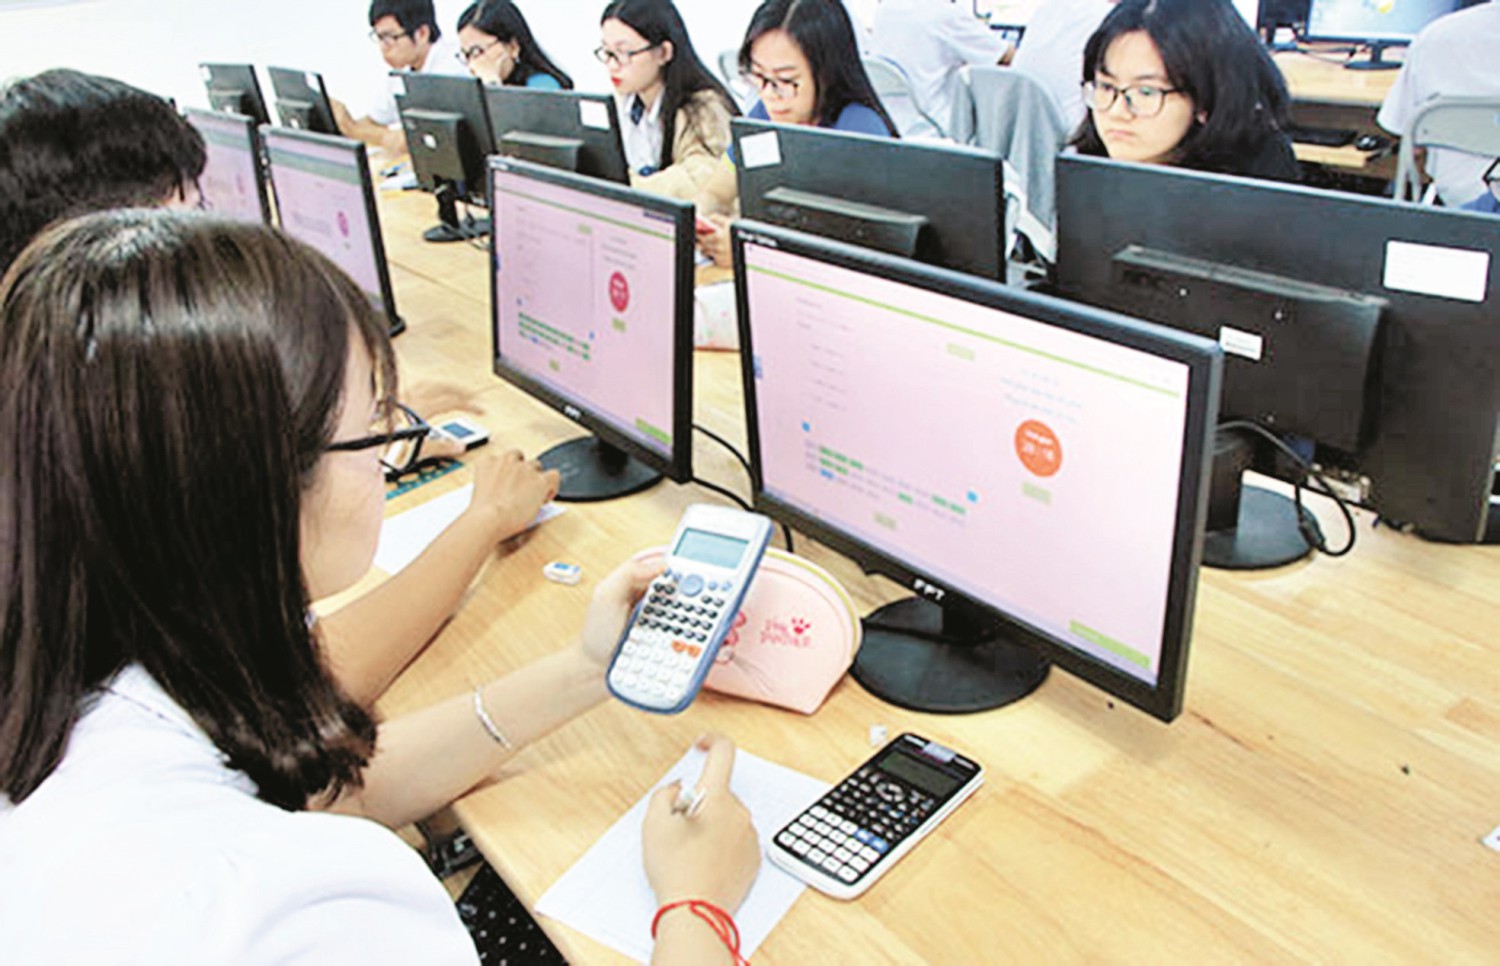 Học sinh làm bài thi trên máy tính